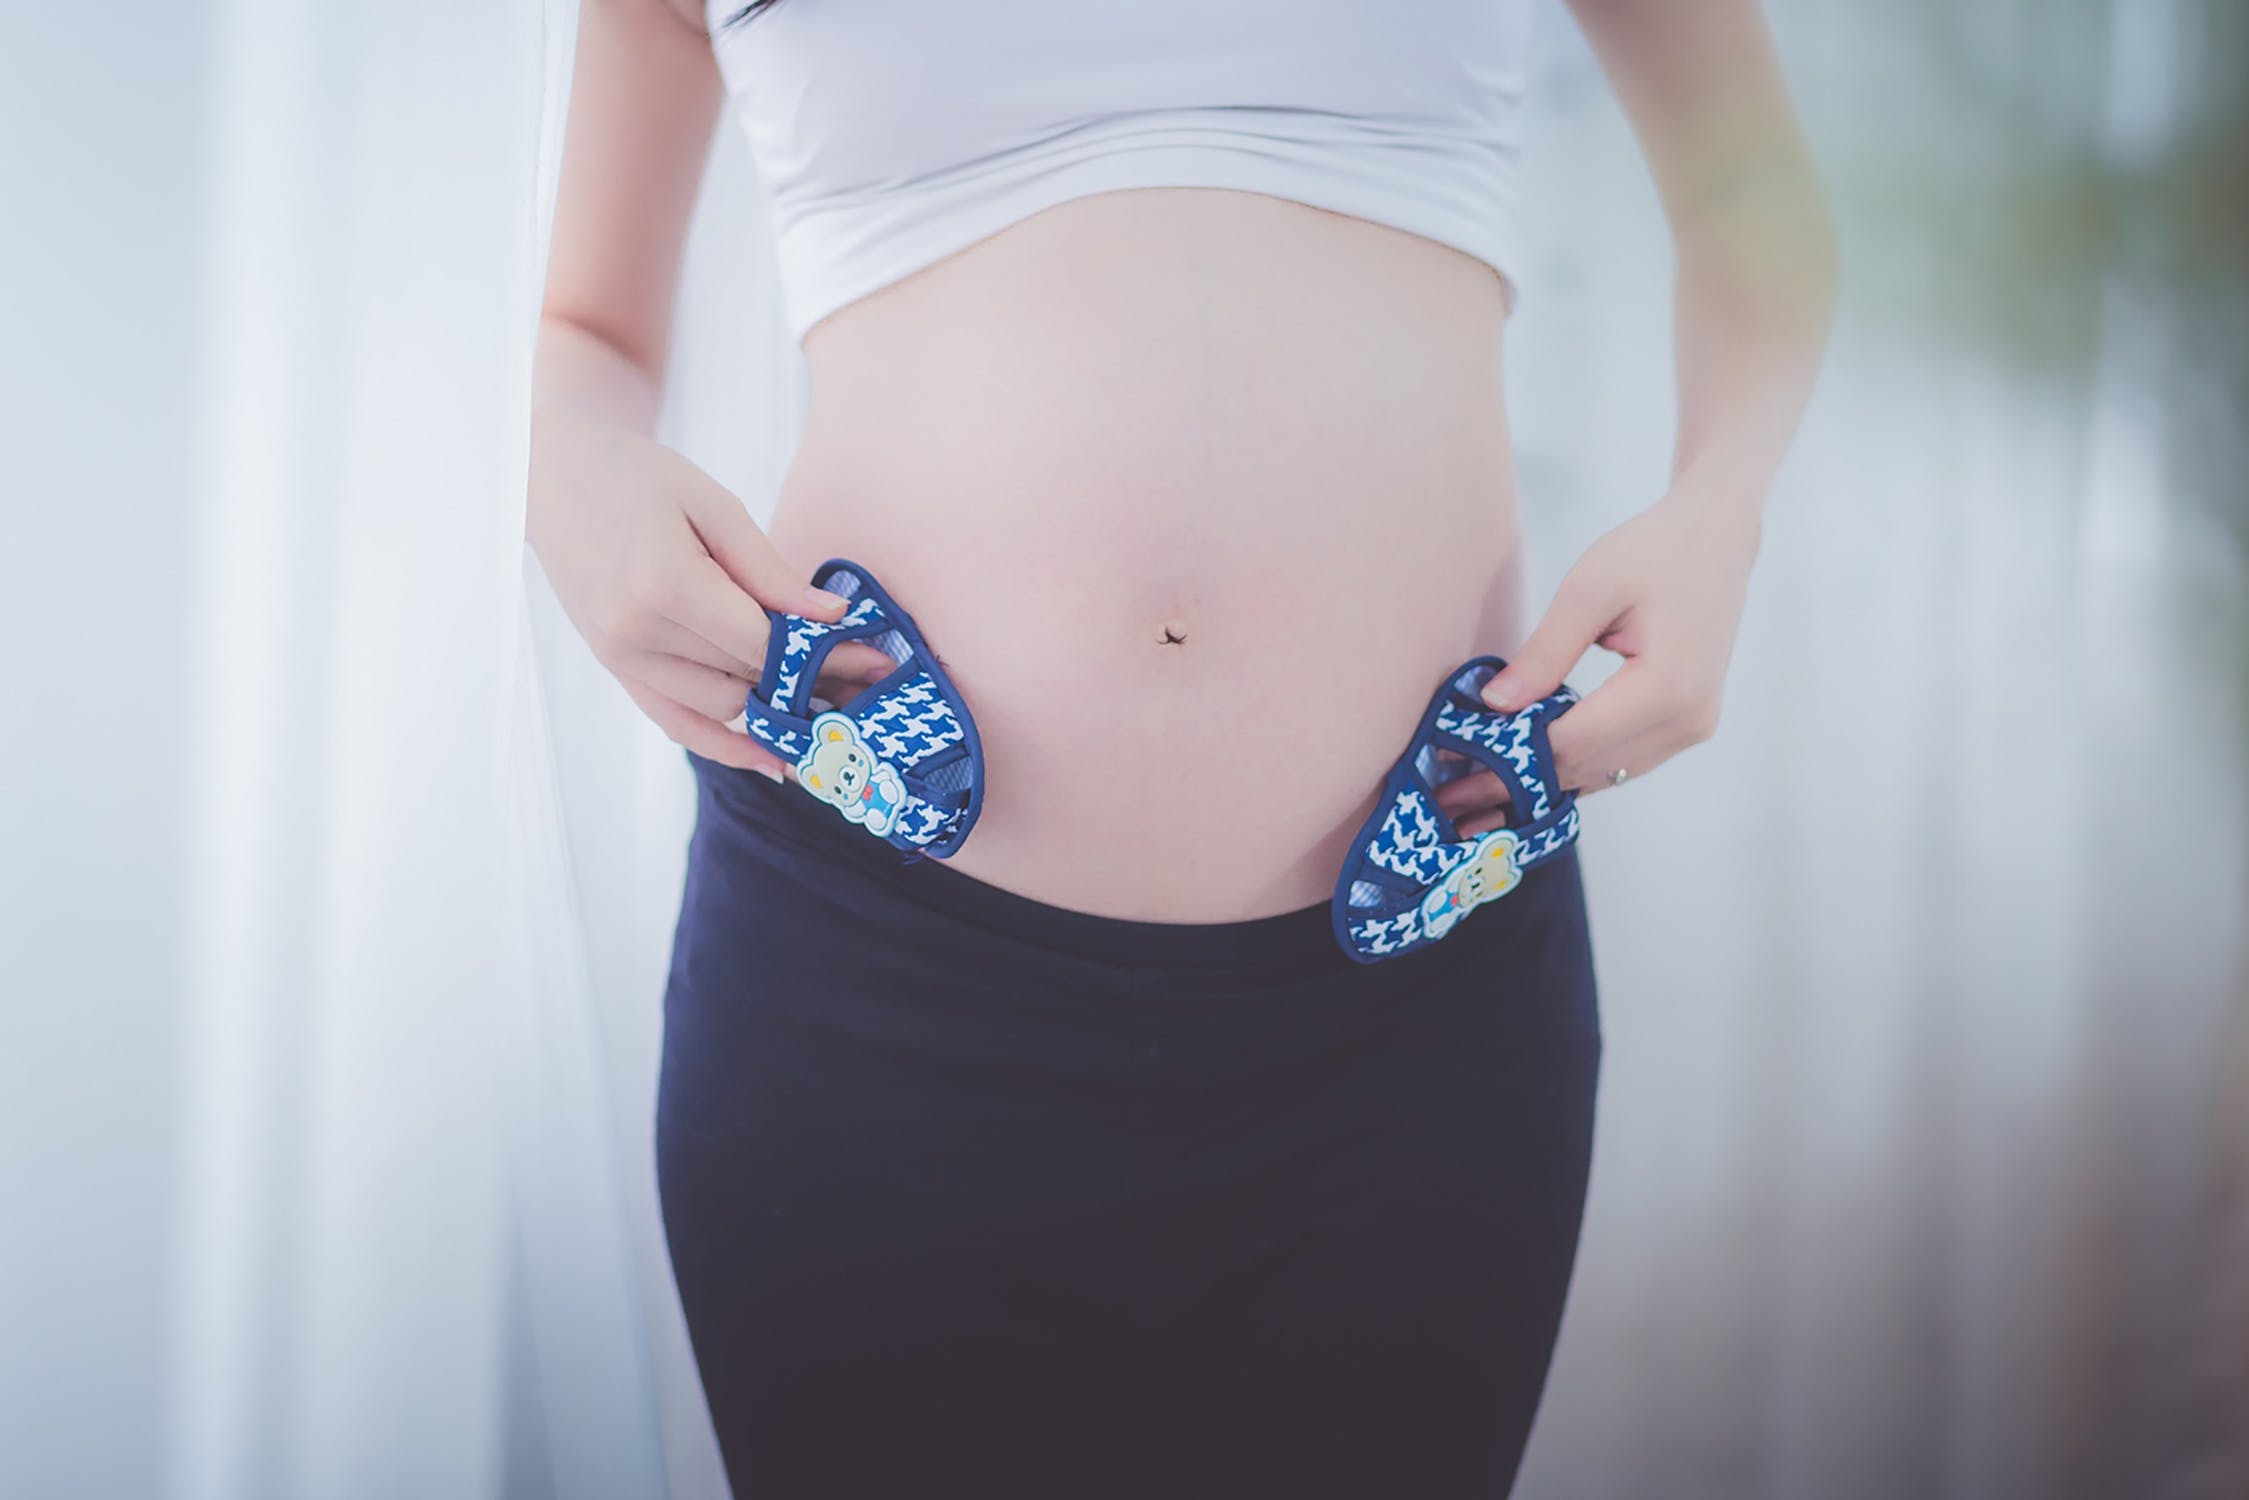 Mujer embarazada mostrando su vientre abultado con pequeños zapatos en sus manos. | Imagen: Pexels